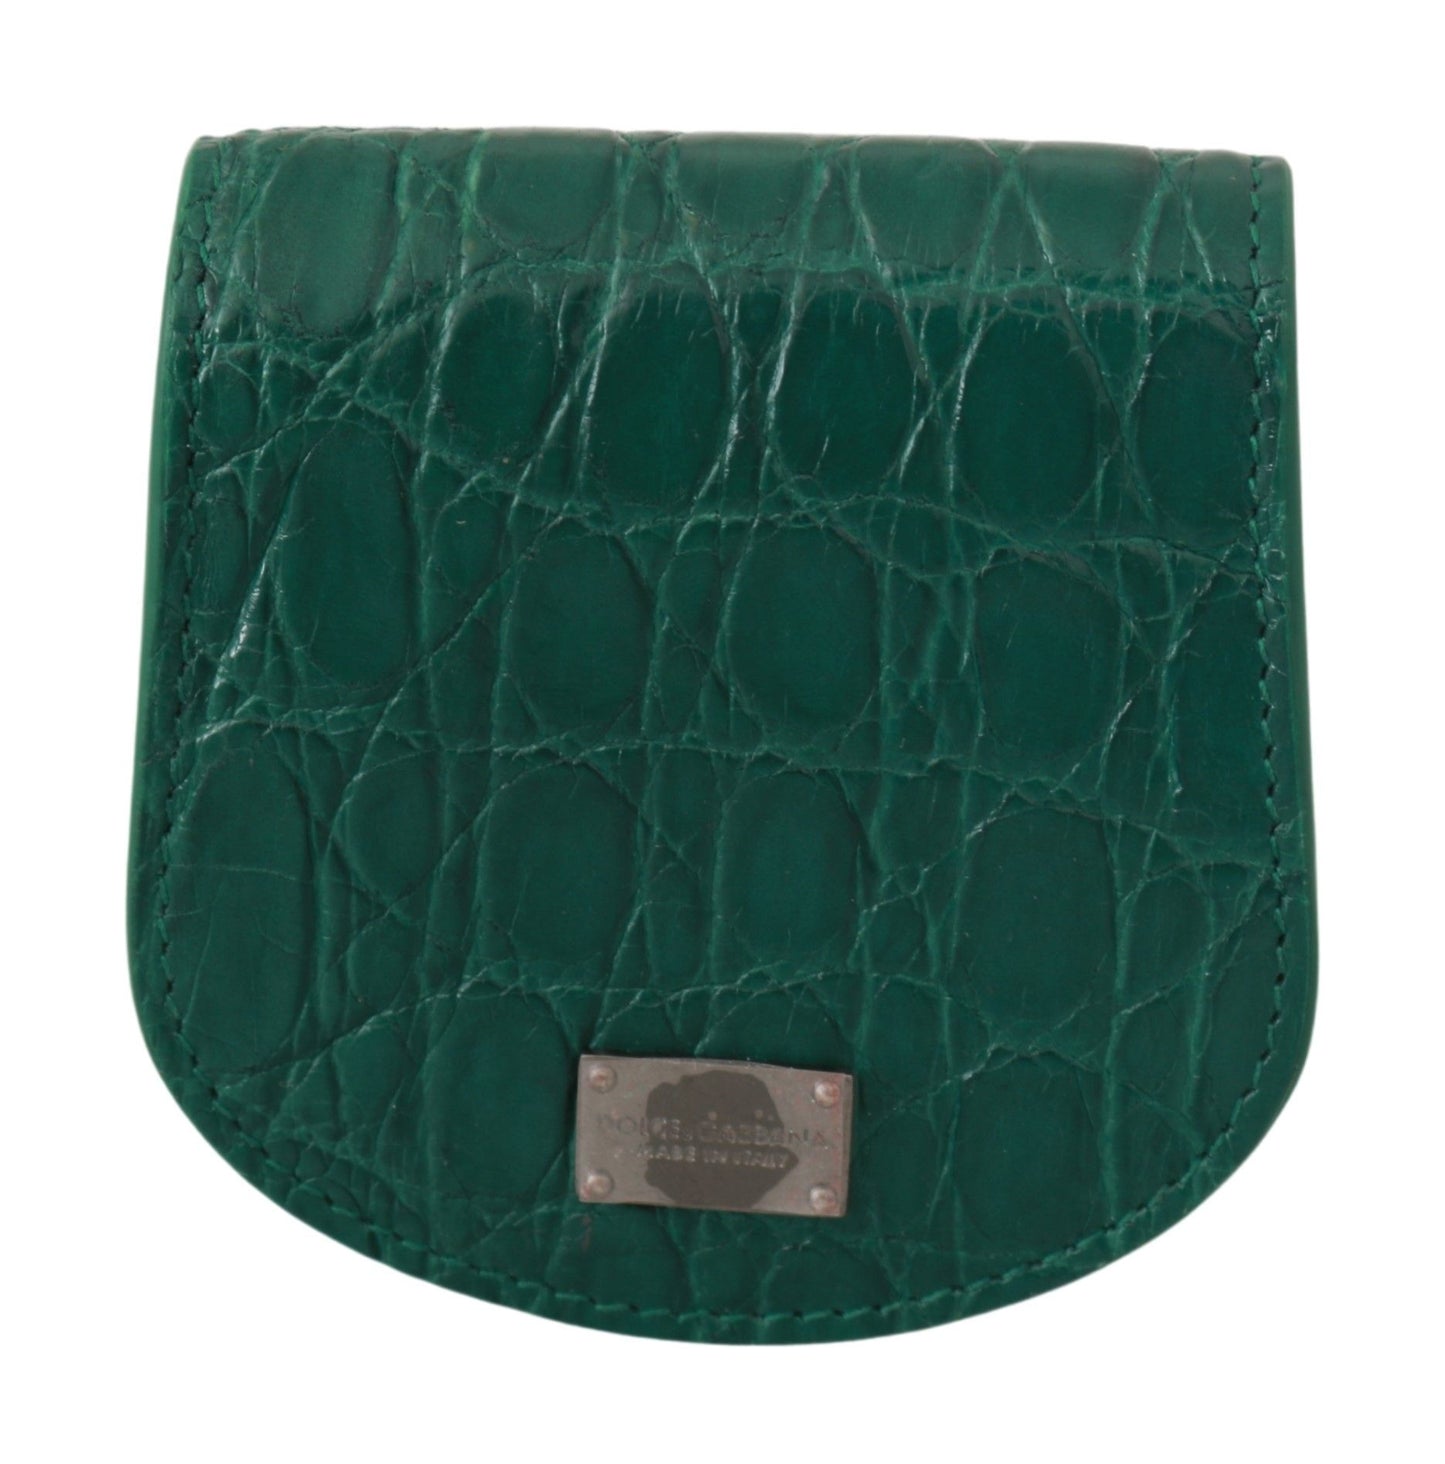 Dolce & Gabbana Green Exotic Skins Préservatif Portefeuille